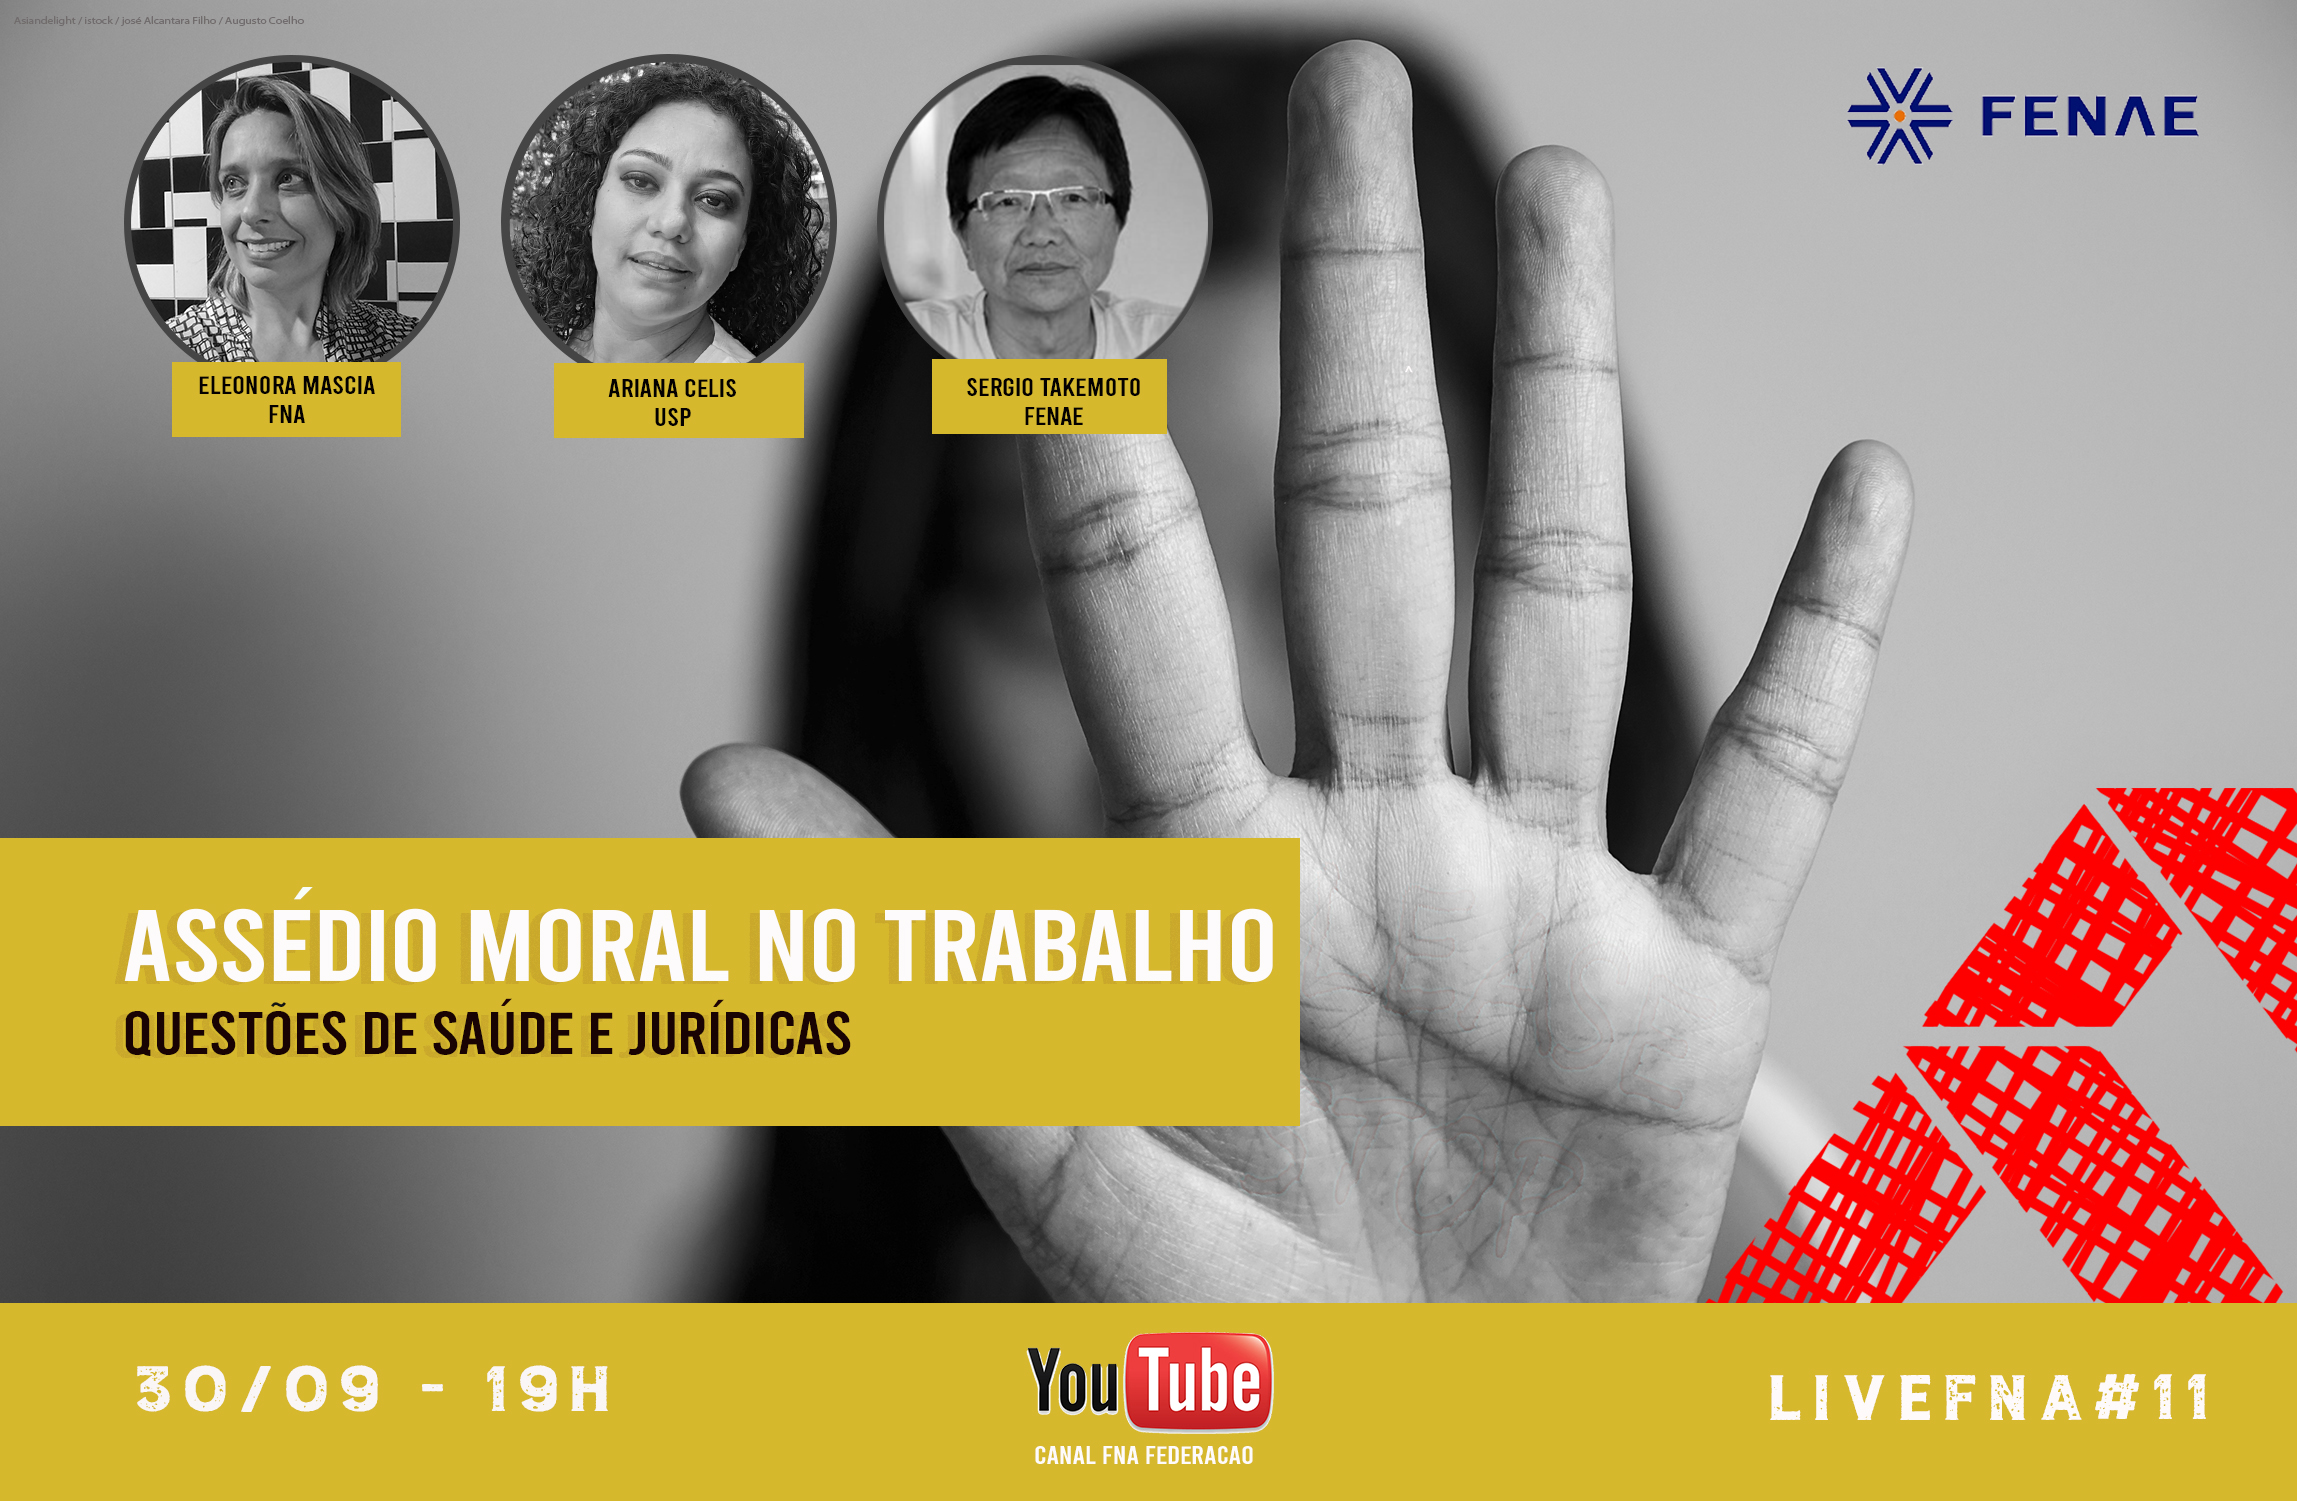 Live FNA#11 debate o assédio moral nas relações de trabalho